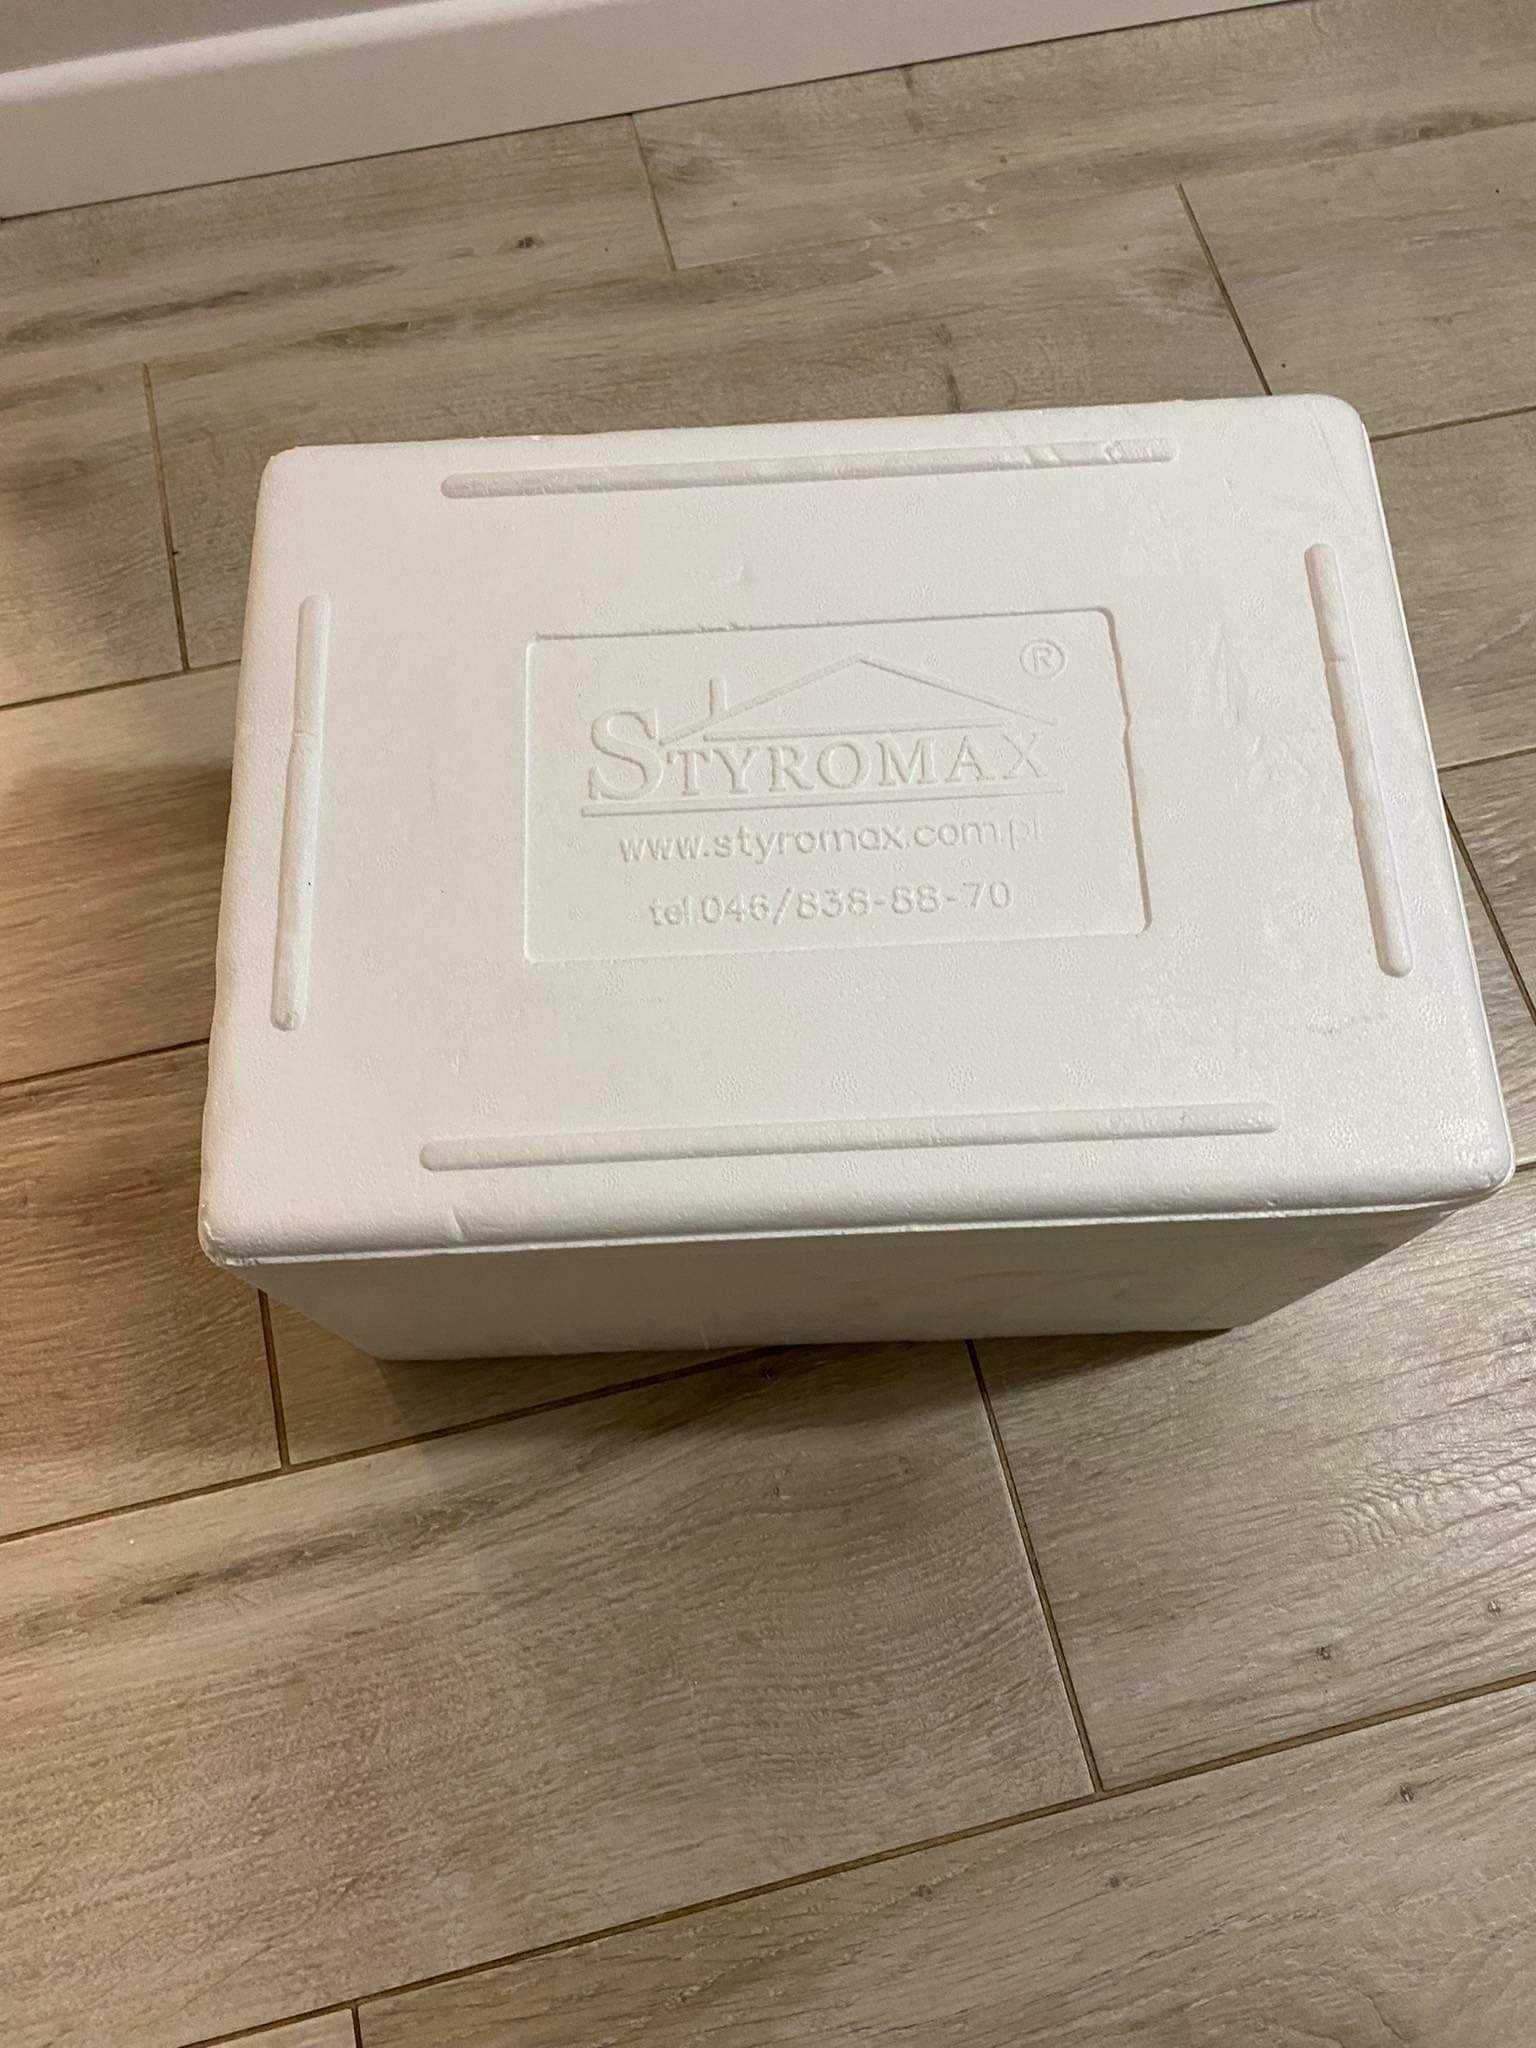 Styrobox styromax opakowanie pudełko opakowanie karton termiczny